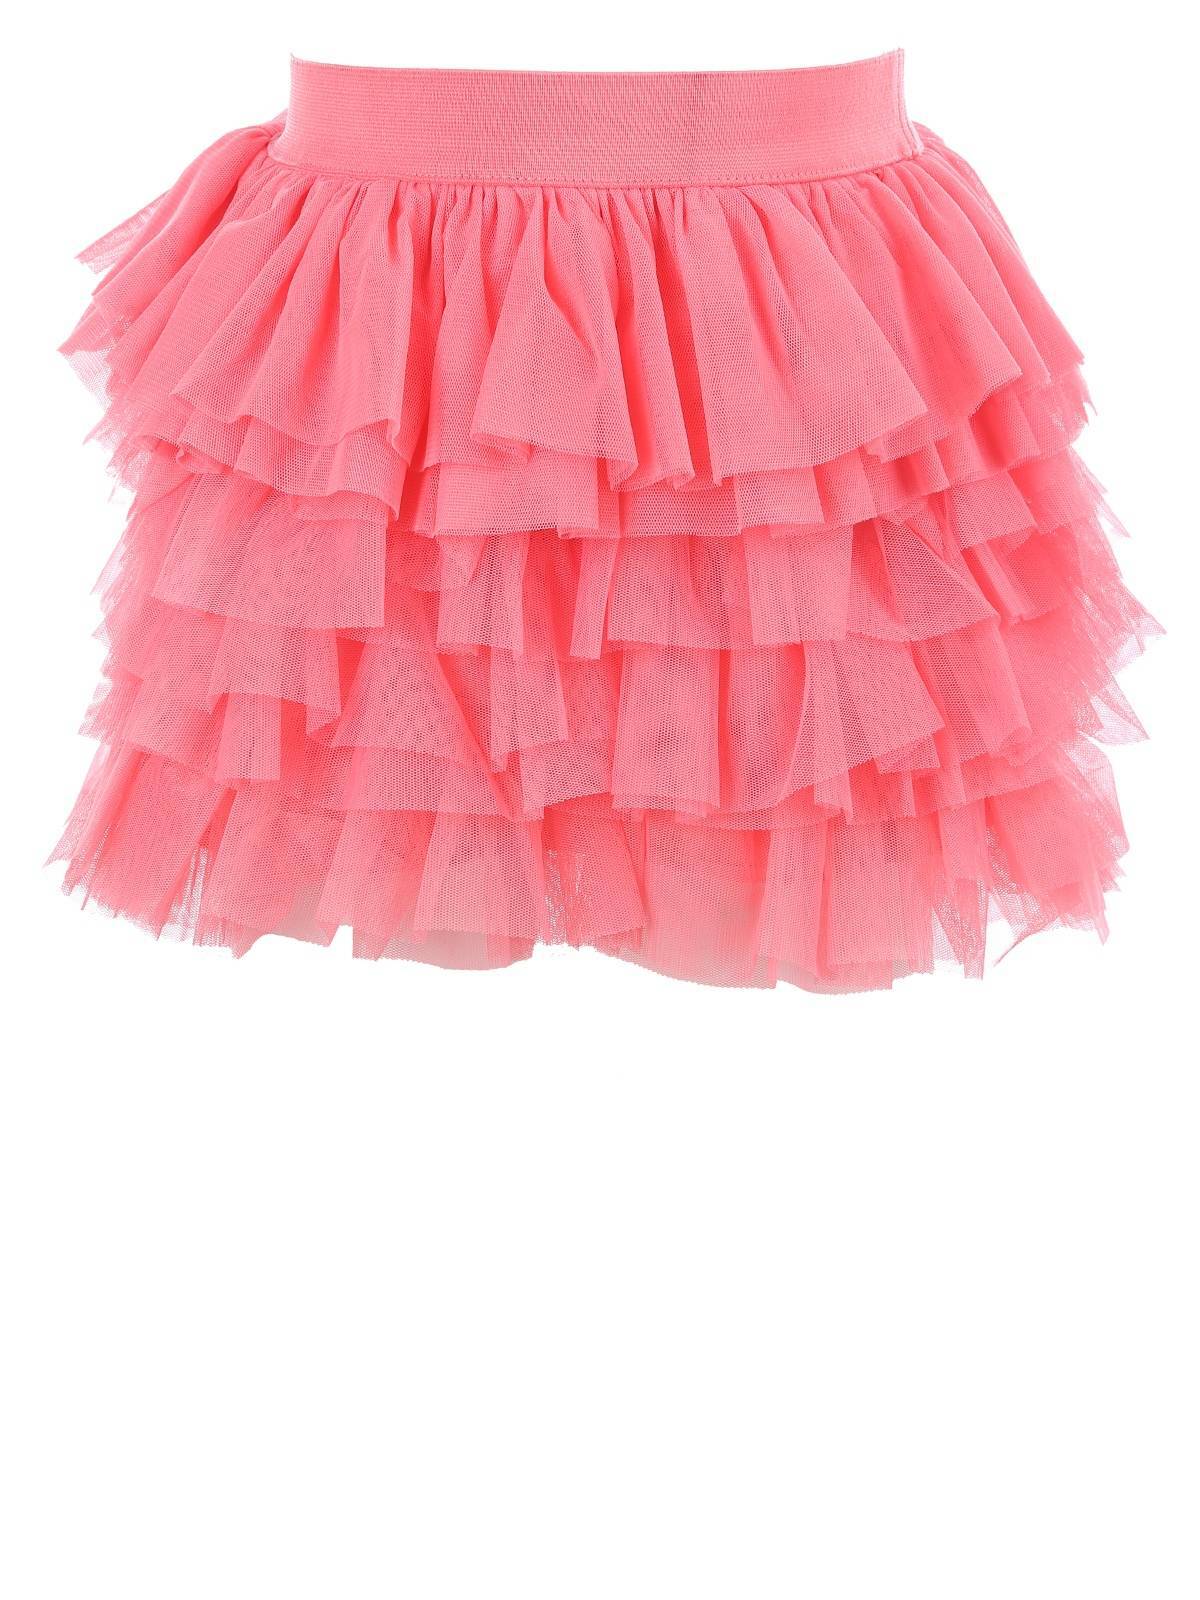 Девочка в розовой юбке. Юбка Майорал для девочки. Mayoral юбка розовая плиссе. Юбка Майорал черная. Розовая юбка.